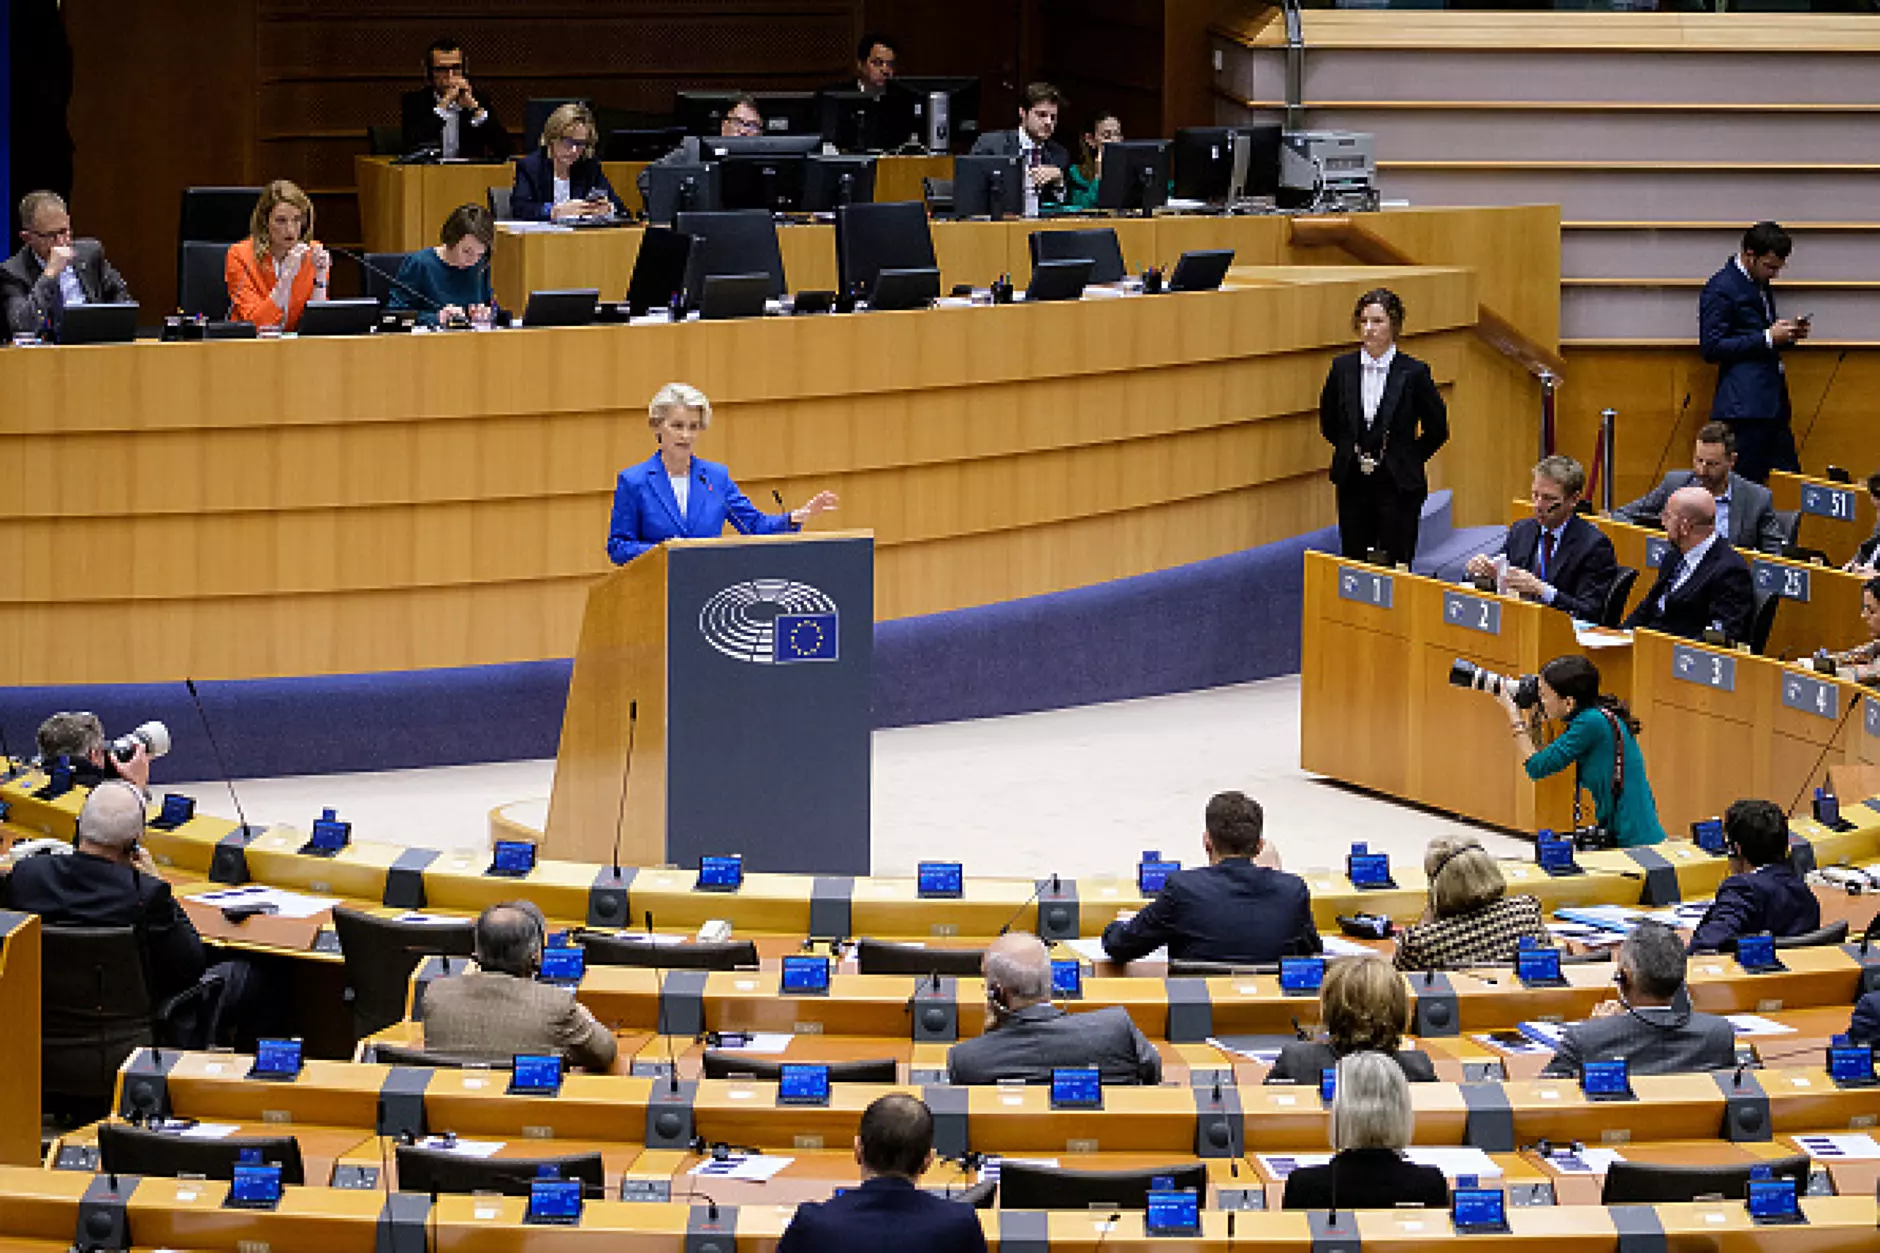 Eвропейският парламент призна Русия за държава спонсор на тероризма